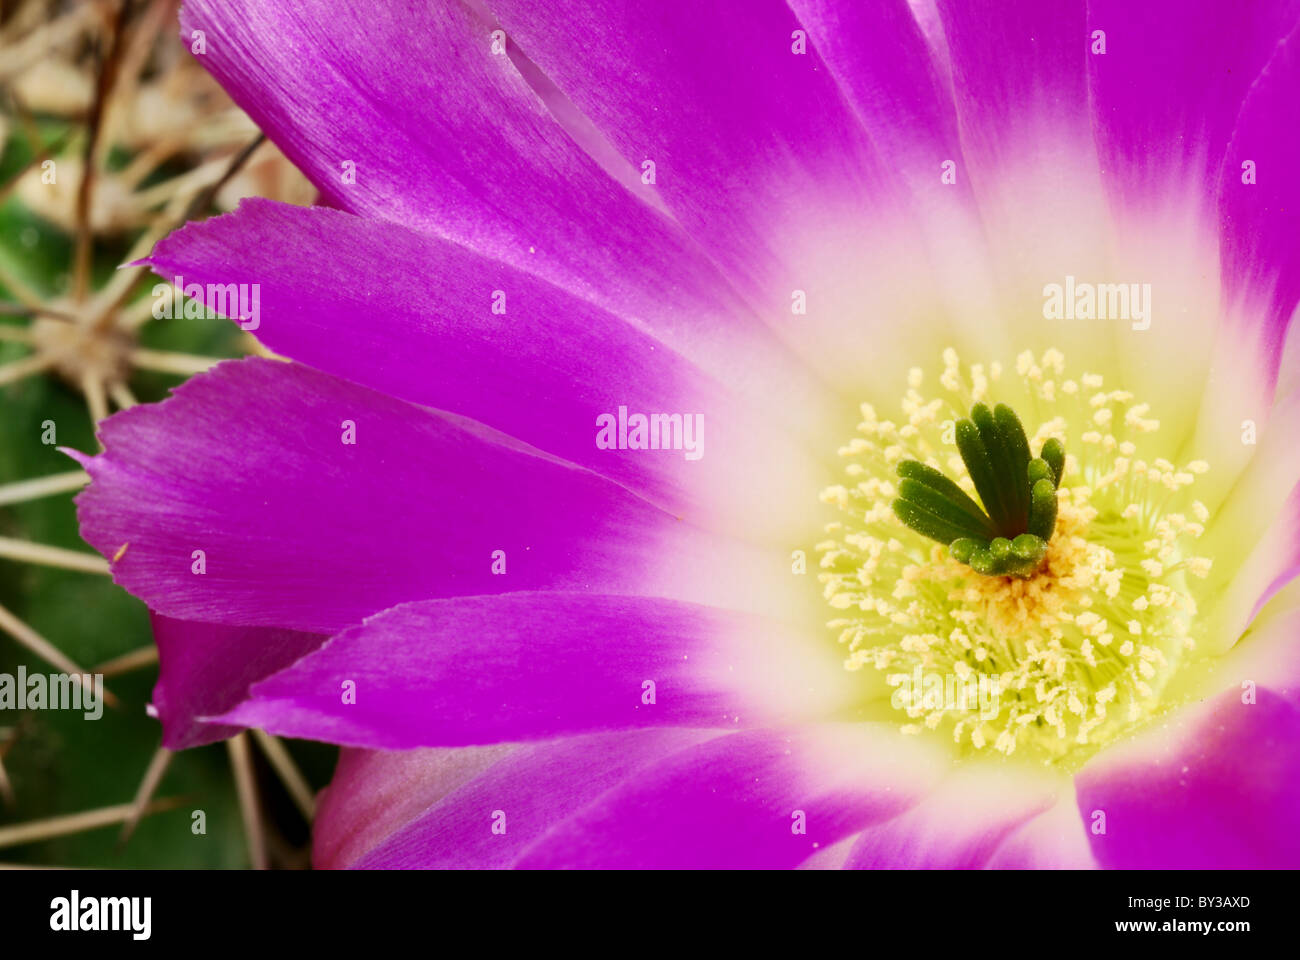 Beautiful bright echinocereus cacti flower Stock Photo